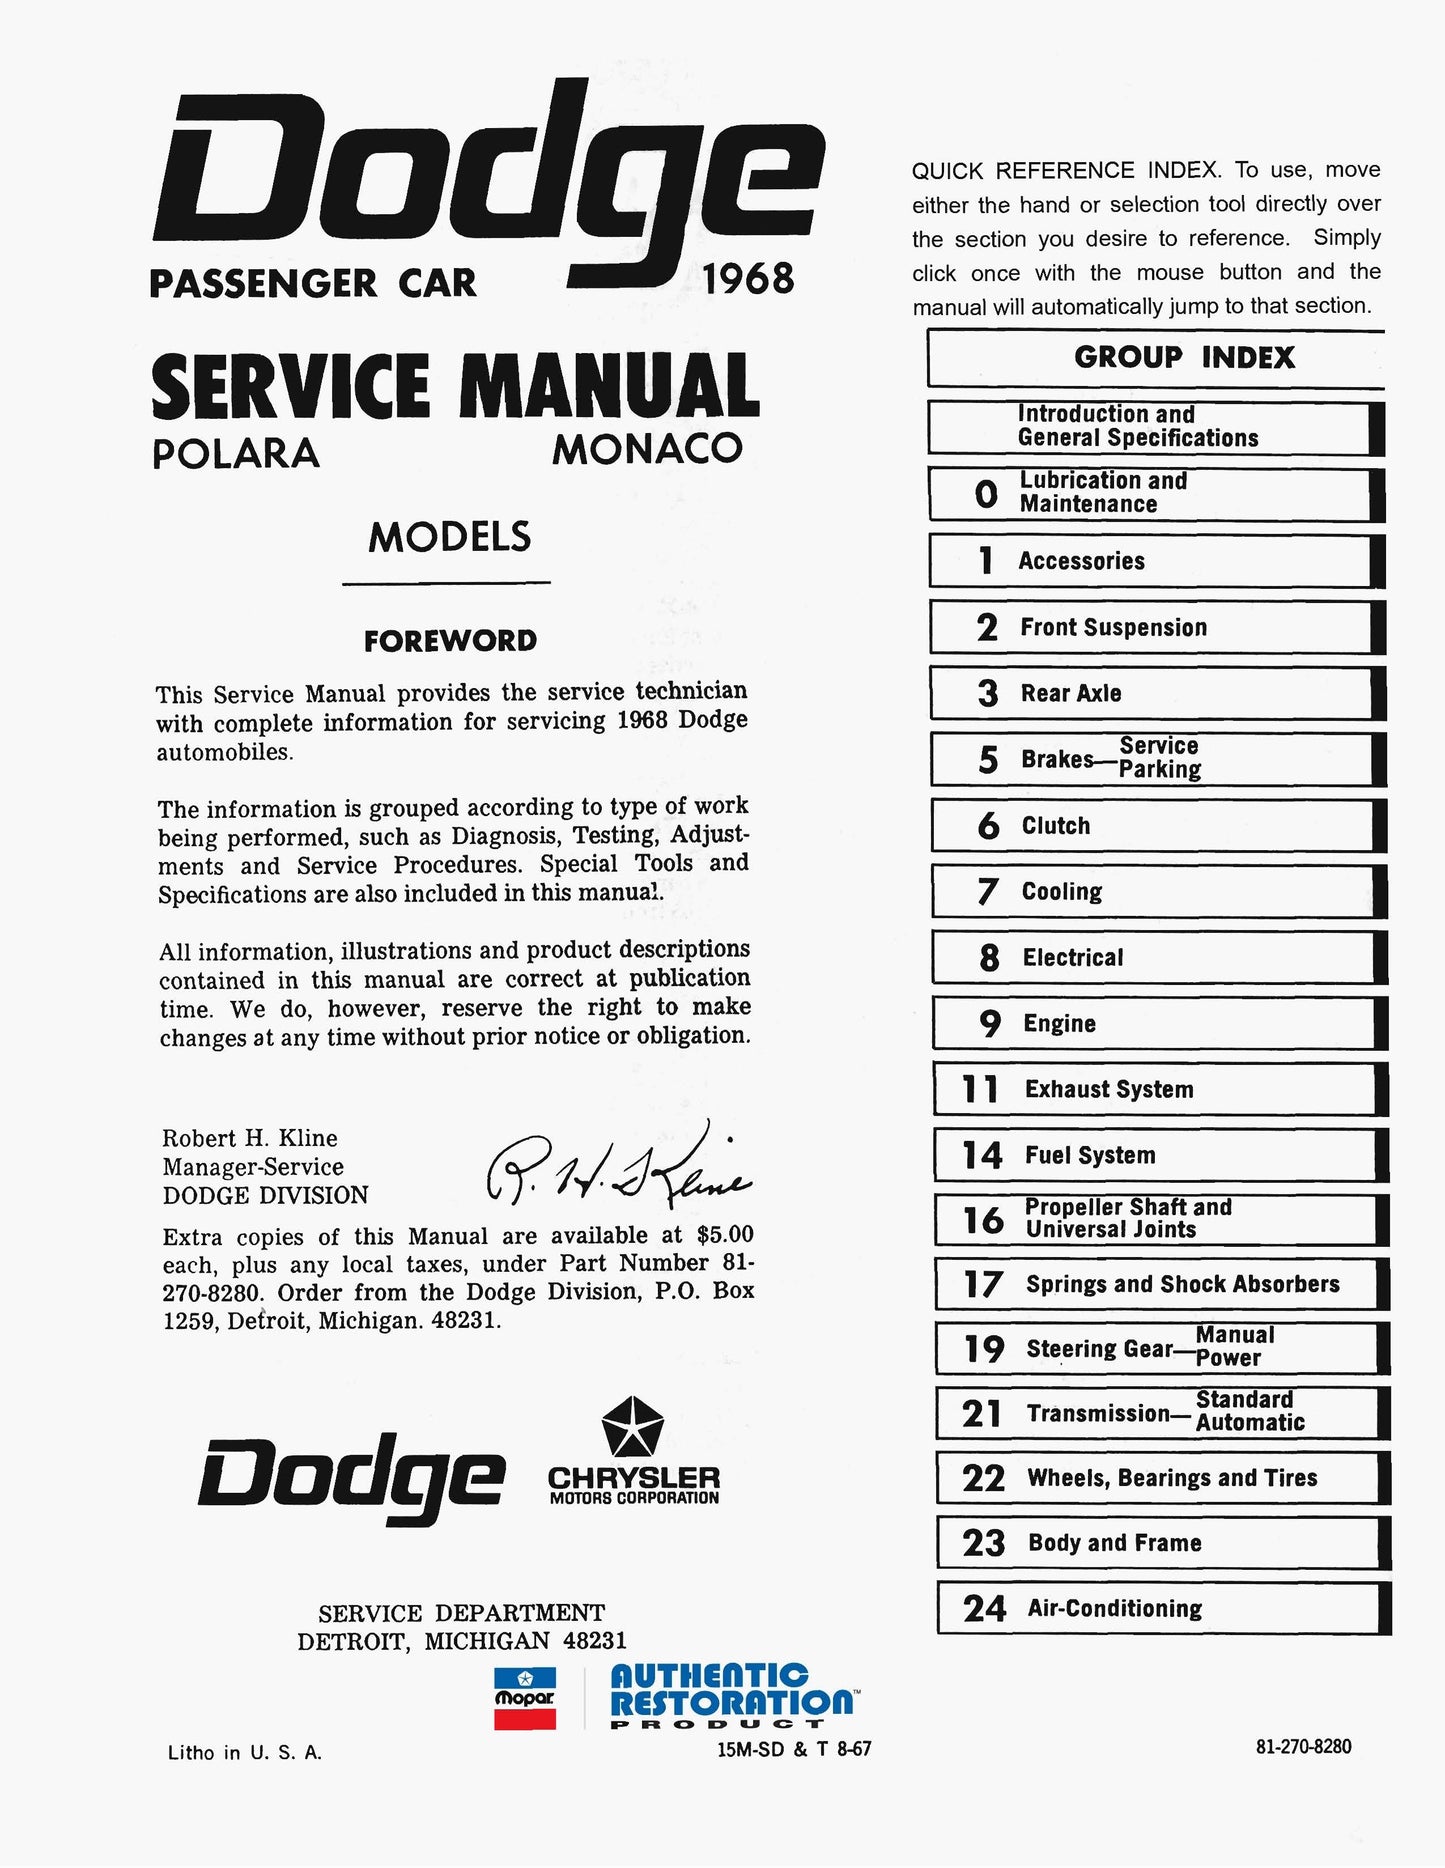 1968 Dodge Service Manuals - All Models